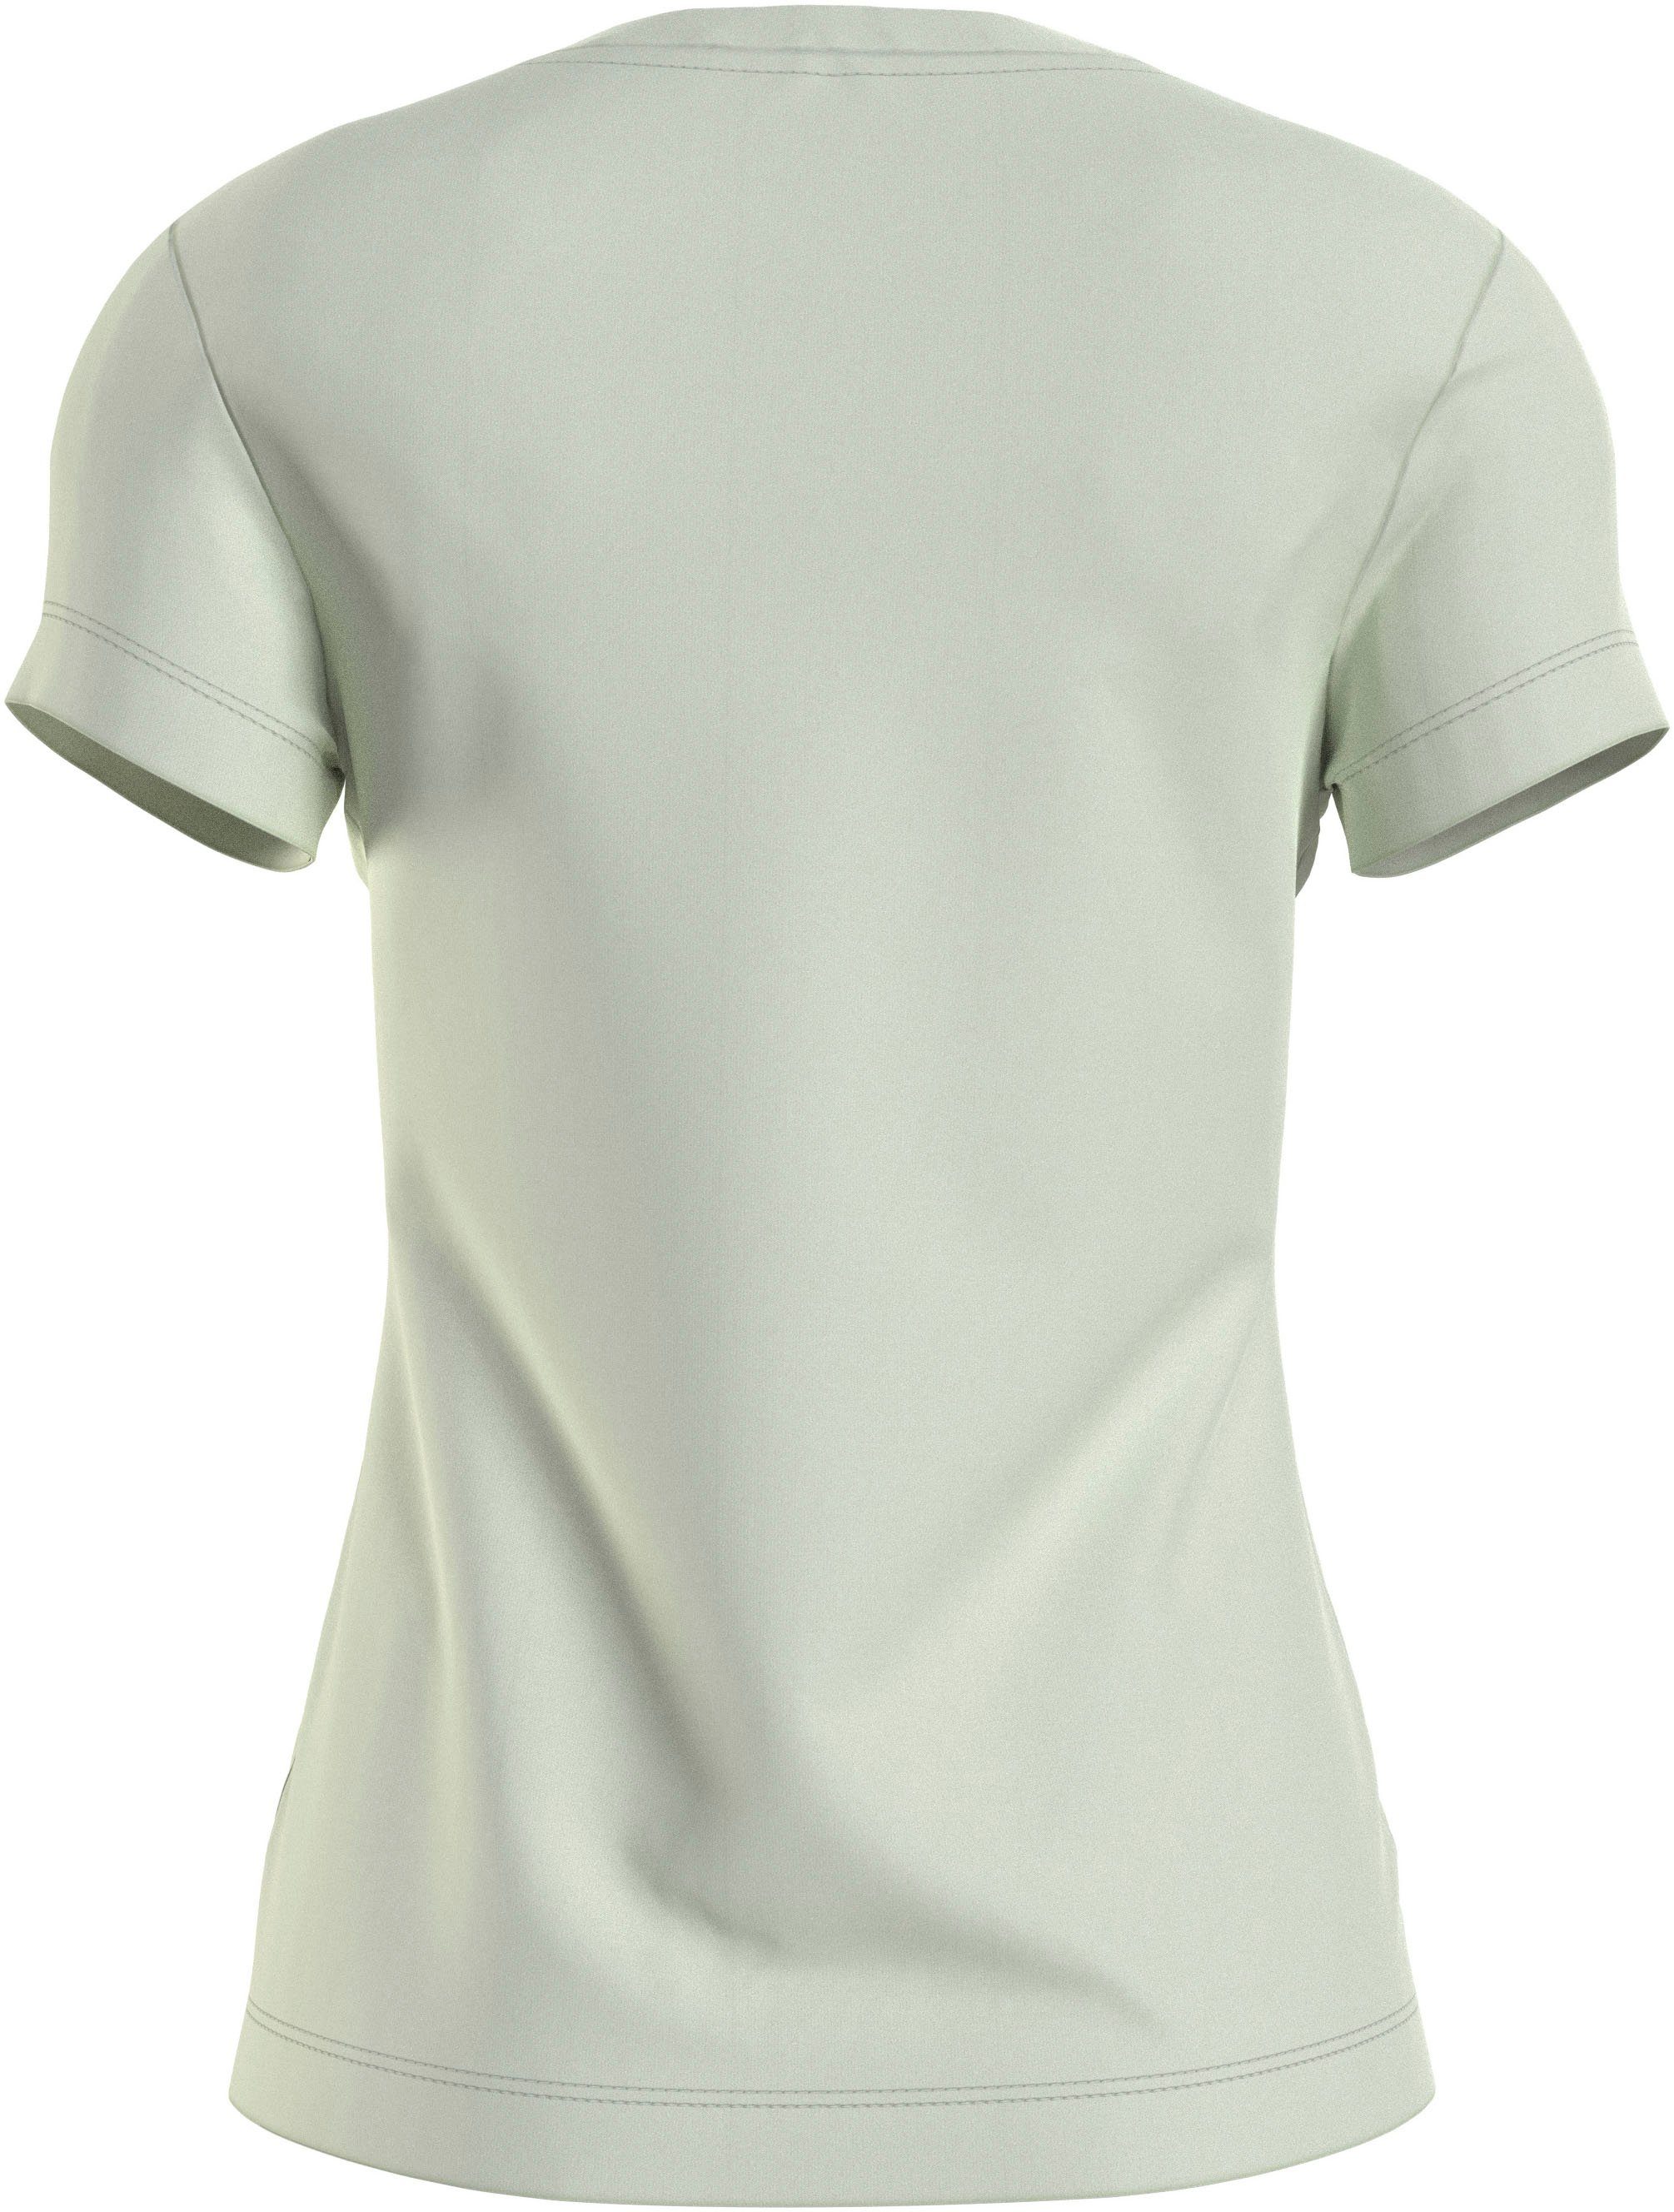 Jeans Klein grün T-Shirt Calvin